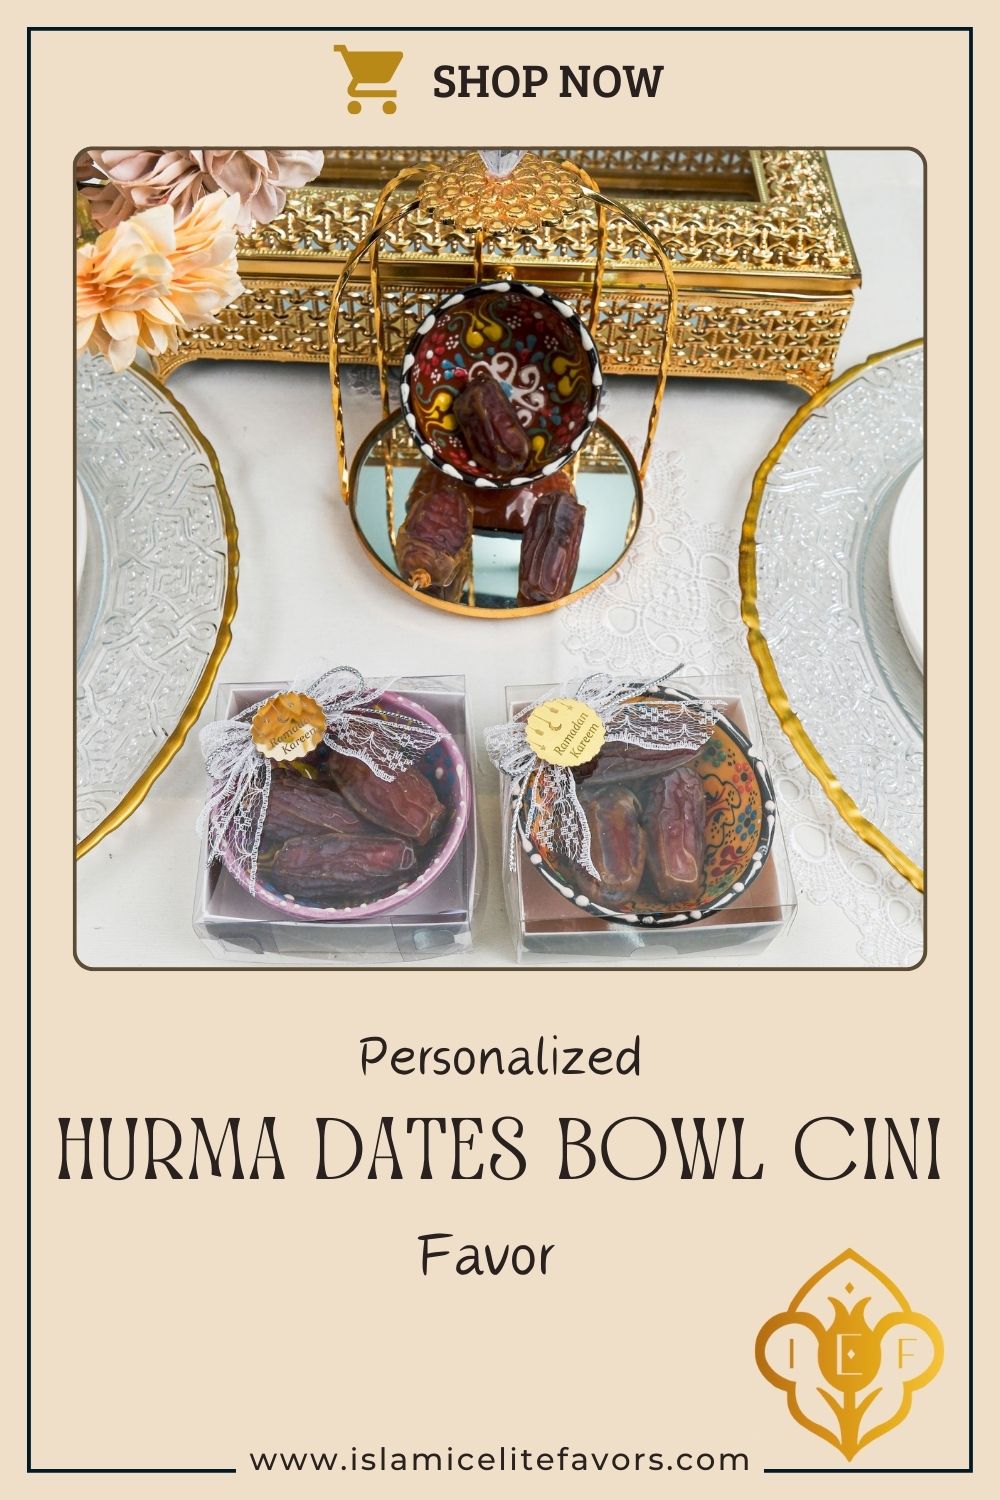 Personalized Hurma Dates in Cini Bowl Favors Ramadan Eid Islamic Gift